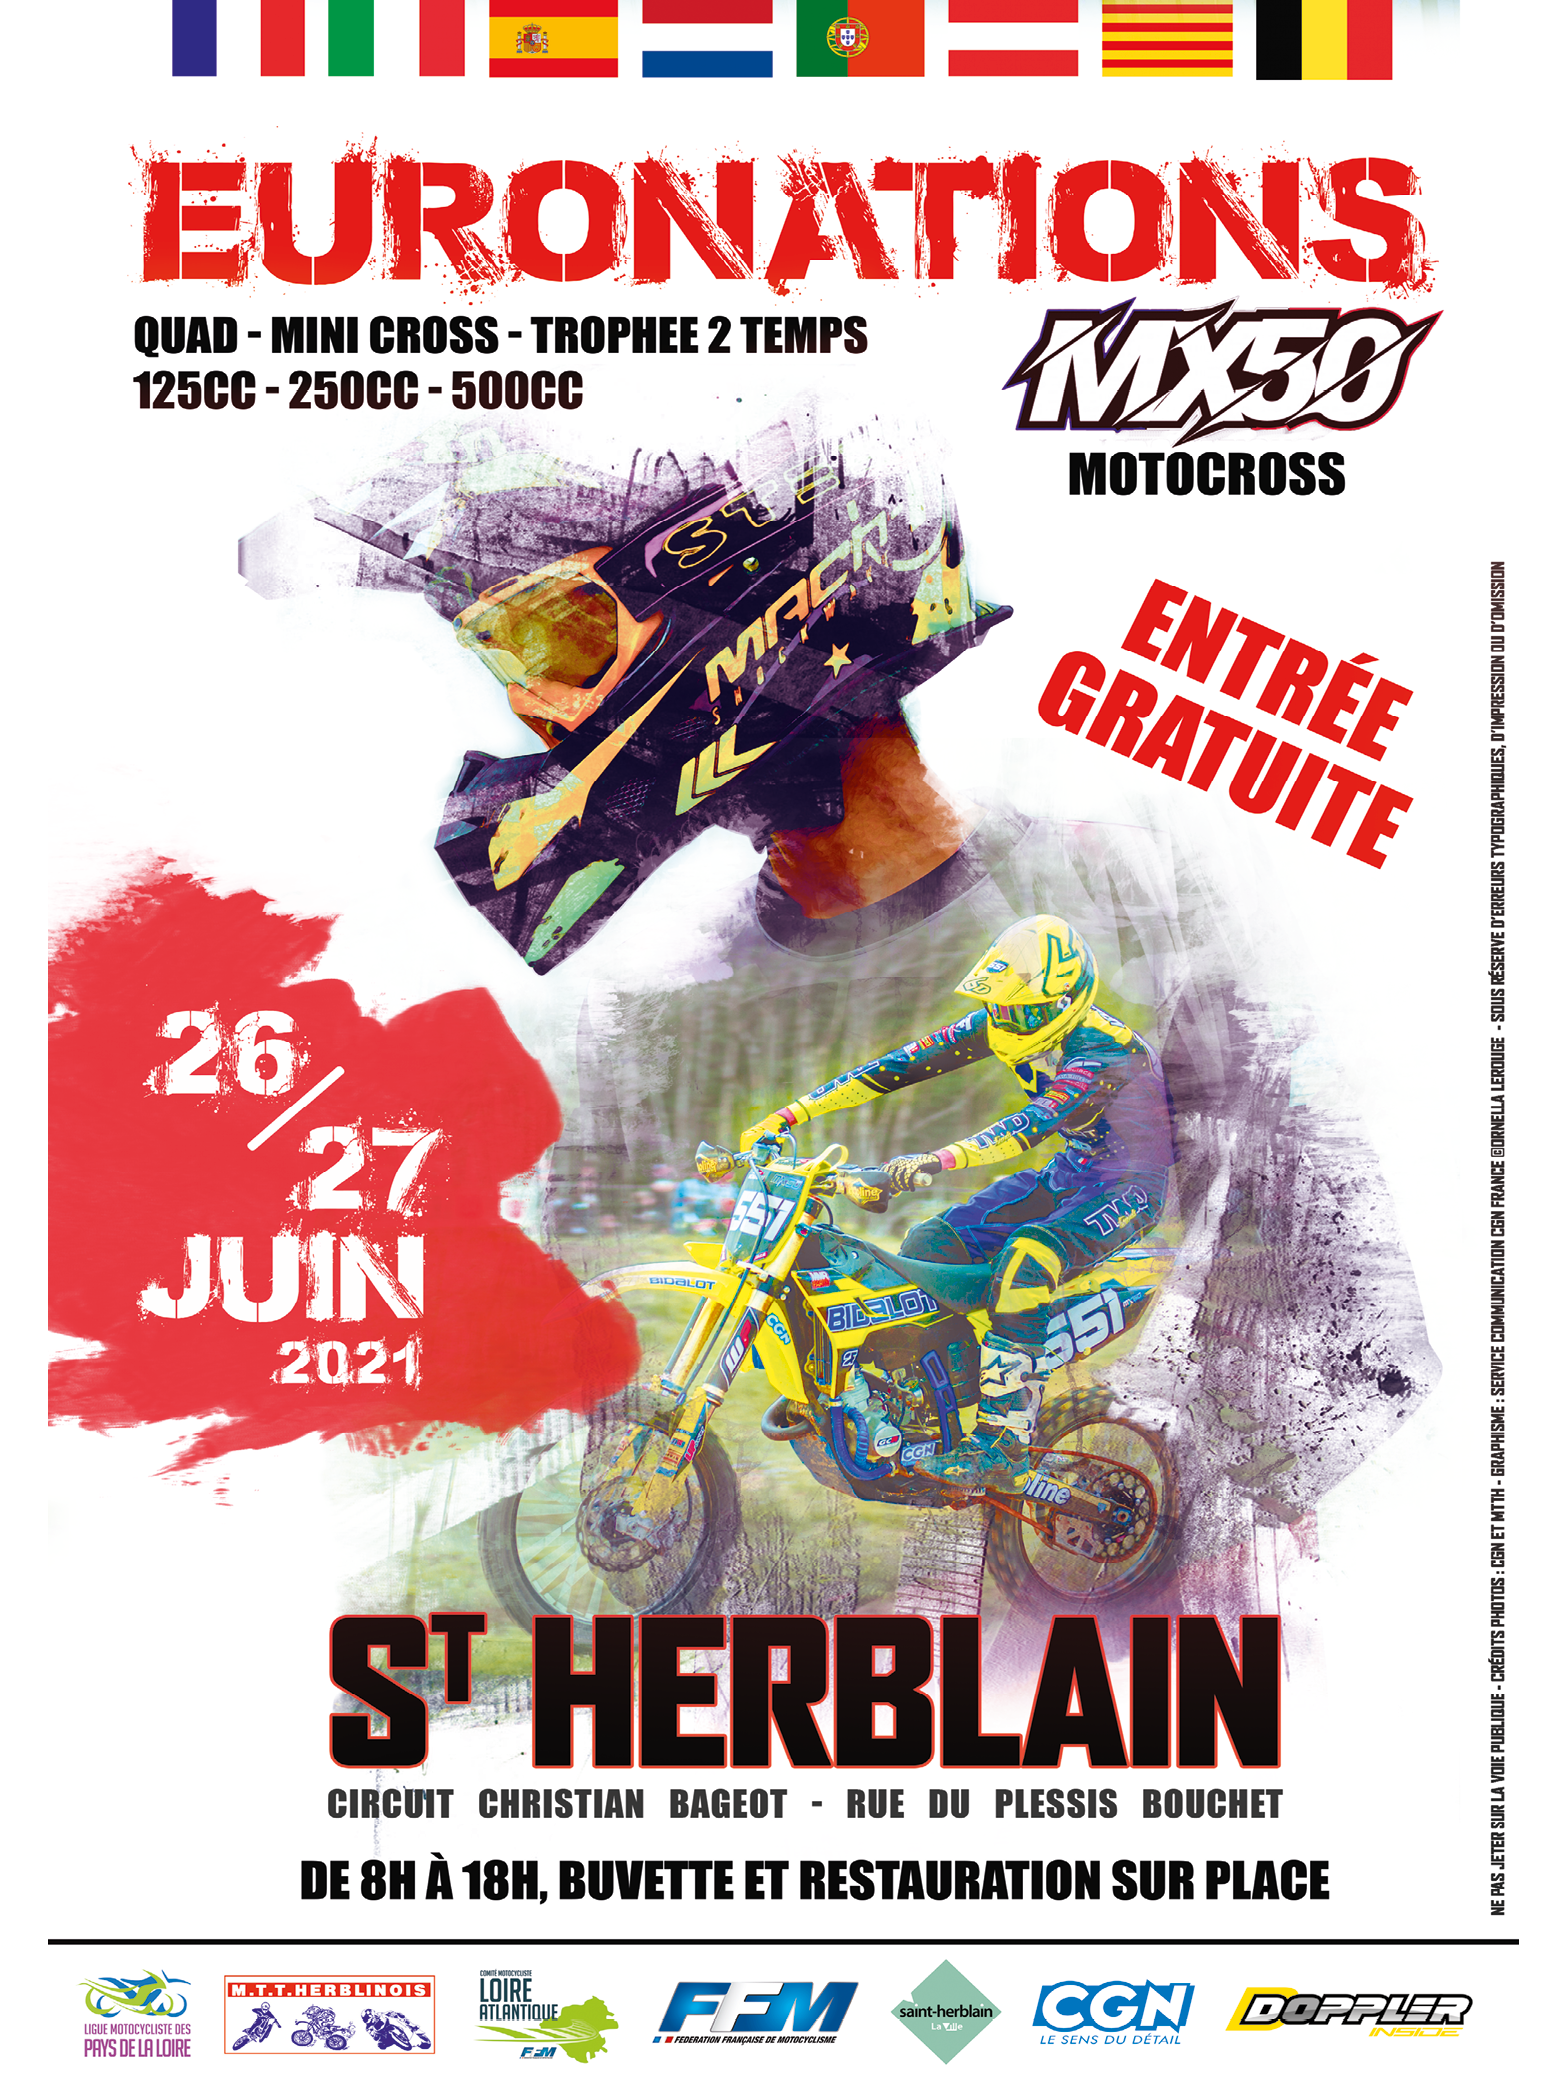 Info Motocross - Motocross International St Herblain